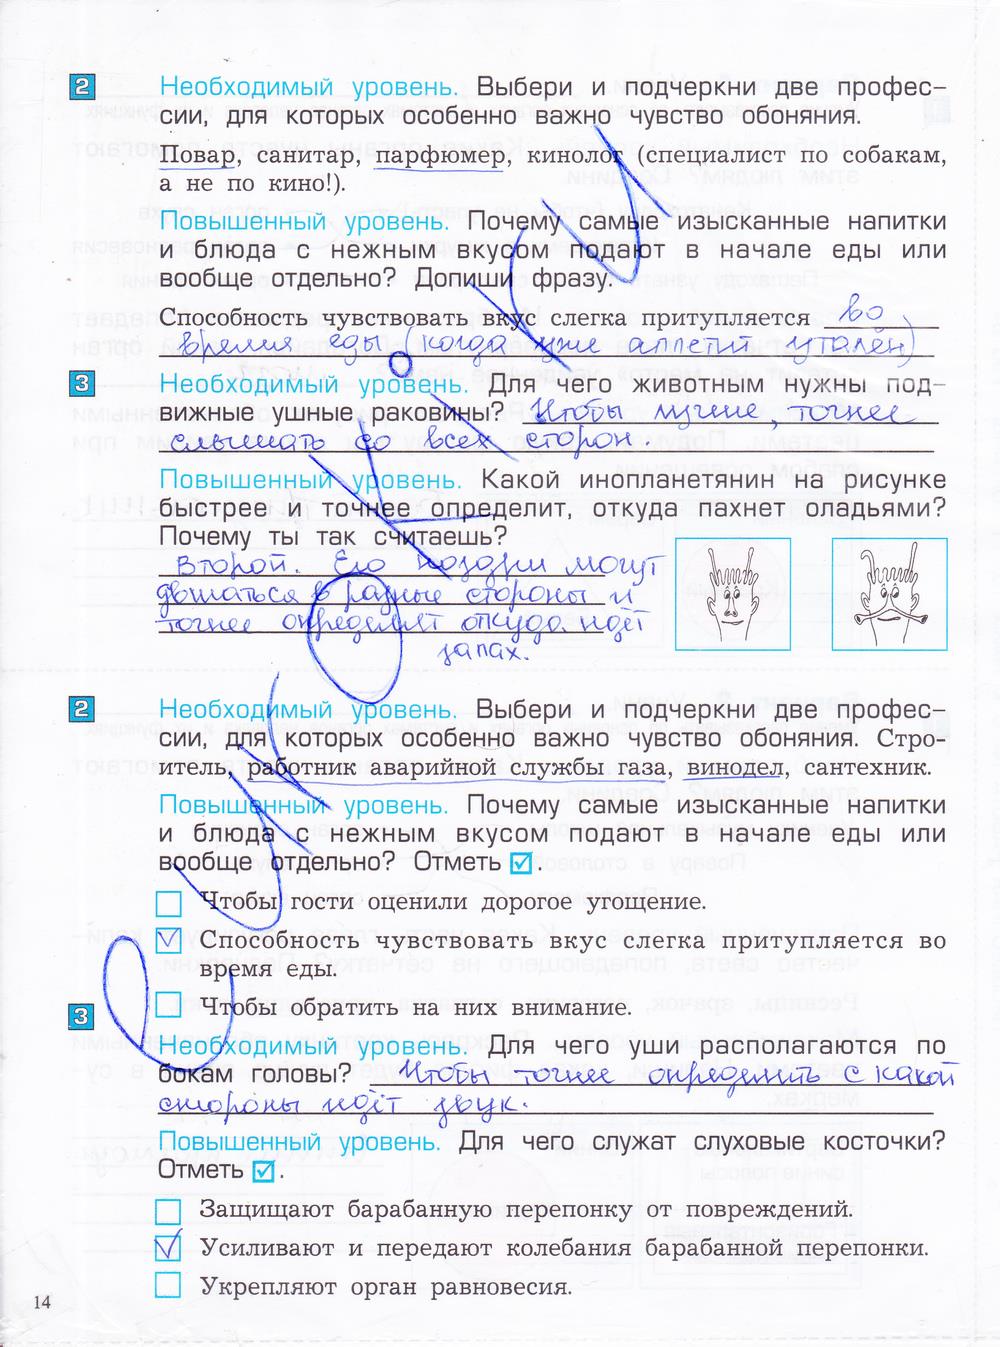 гдз 4 класс проверочные и контрольные работы часть 1 страница 14 окружающий мир Вахрушев, Бурский, Родыгина